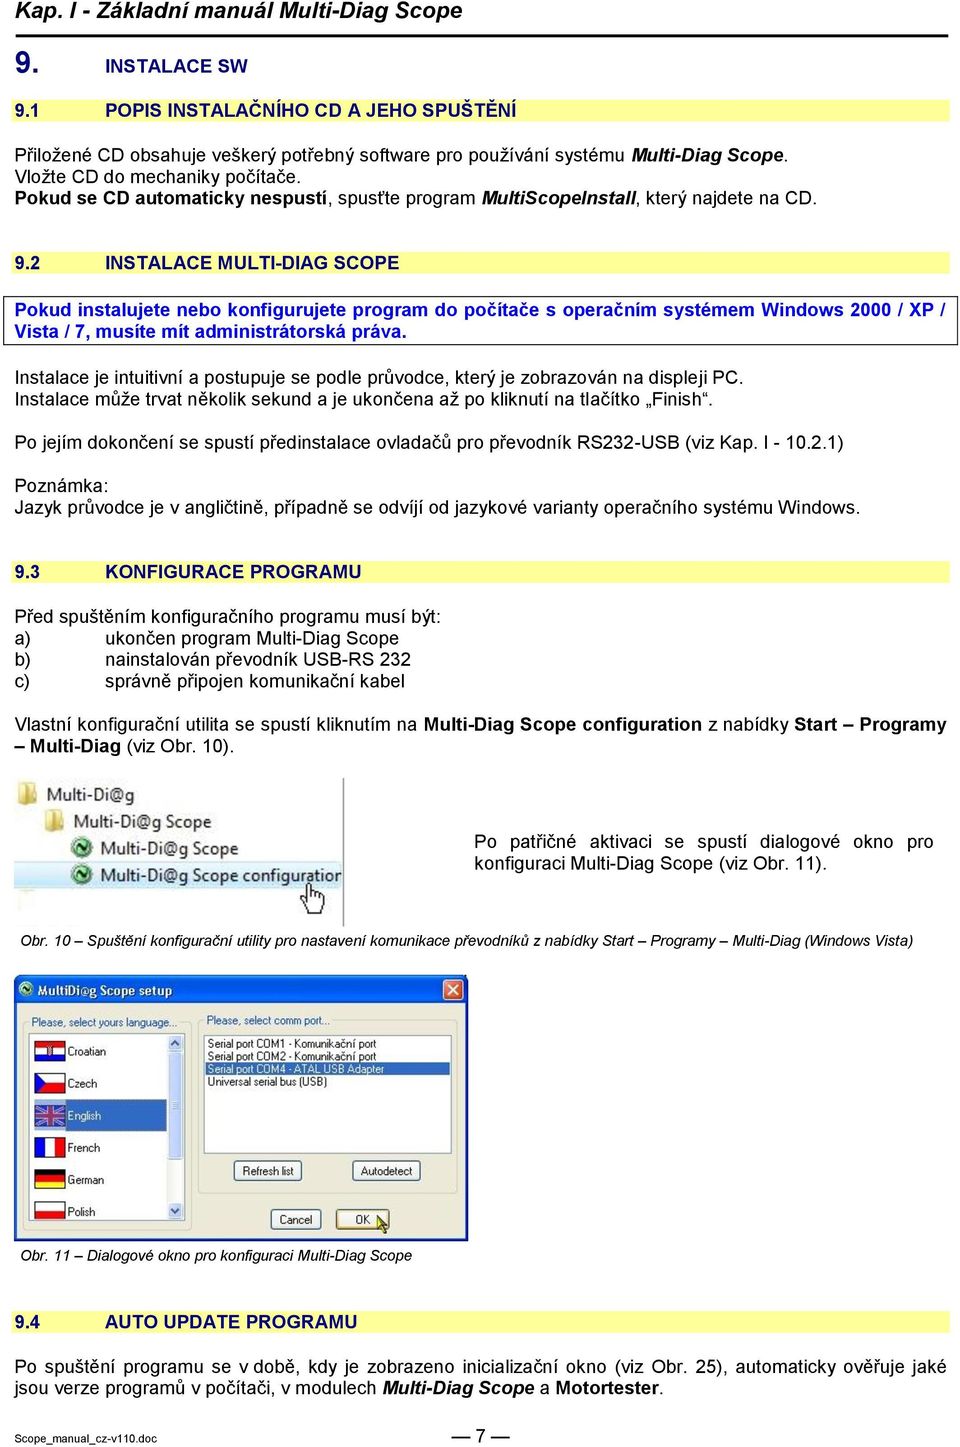 2 INSTALACE MULTI-DIAG SCOPE Pokud instalujete nebo konfigurujete program do počítače s operačním systémem Windows 2000 / XP / Vista / 7, musíte mít administrátorská práva.